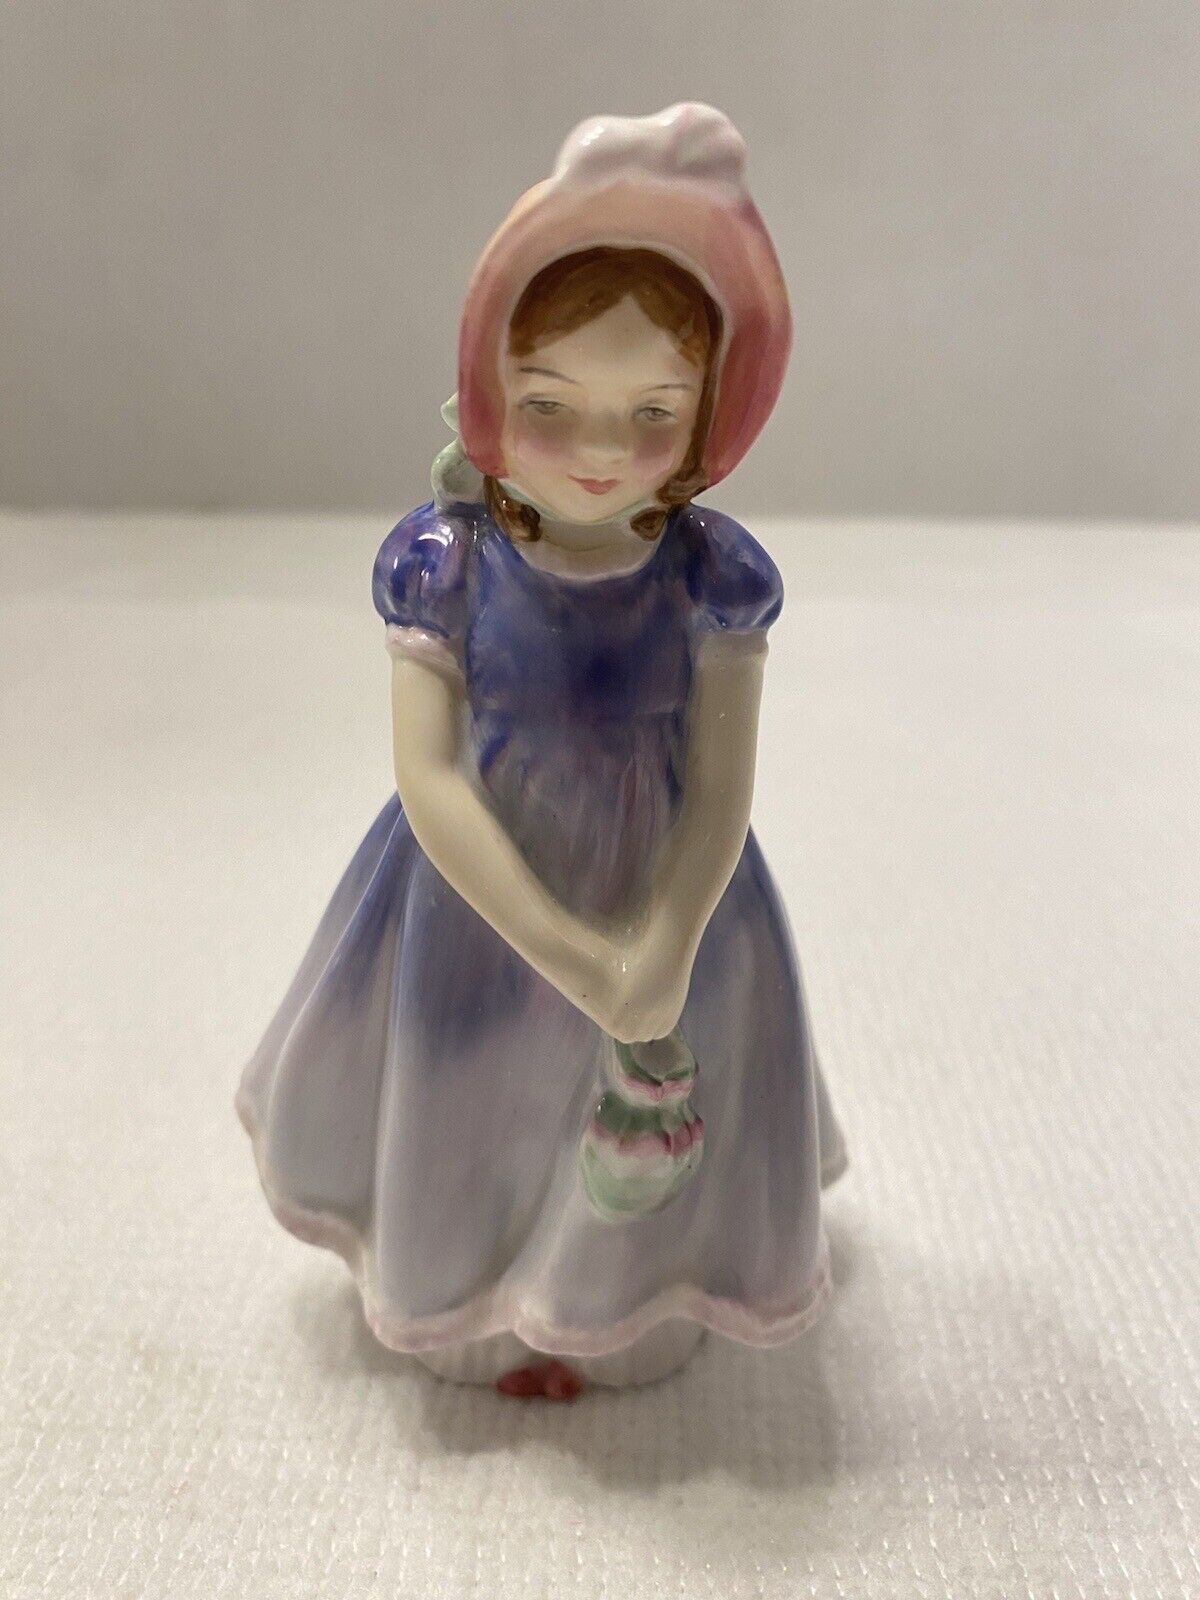 Vintage Royal Dalton Figurine Retired “Ivy” Porcelain Girl In Bonnet 5”